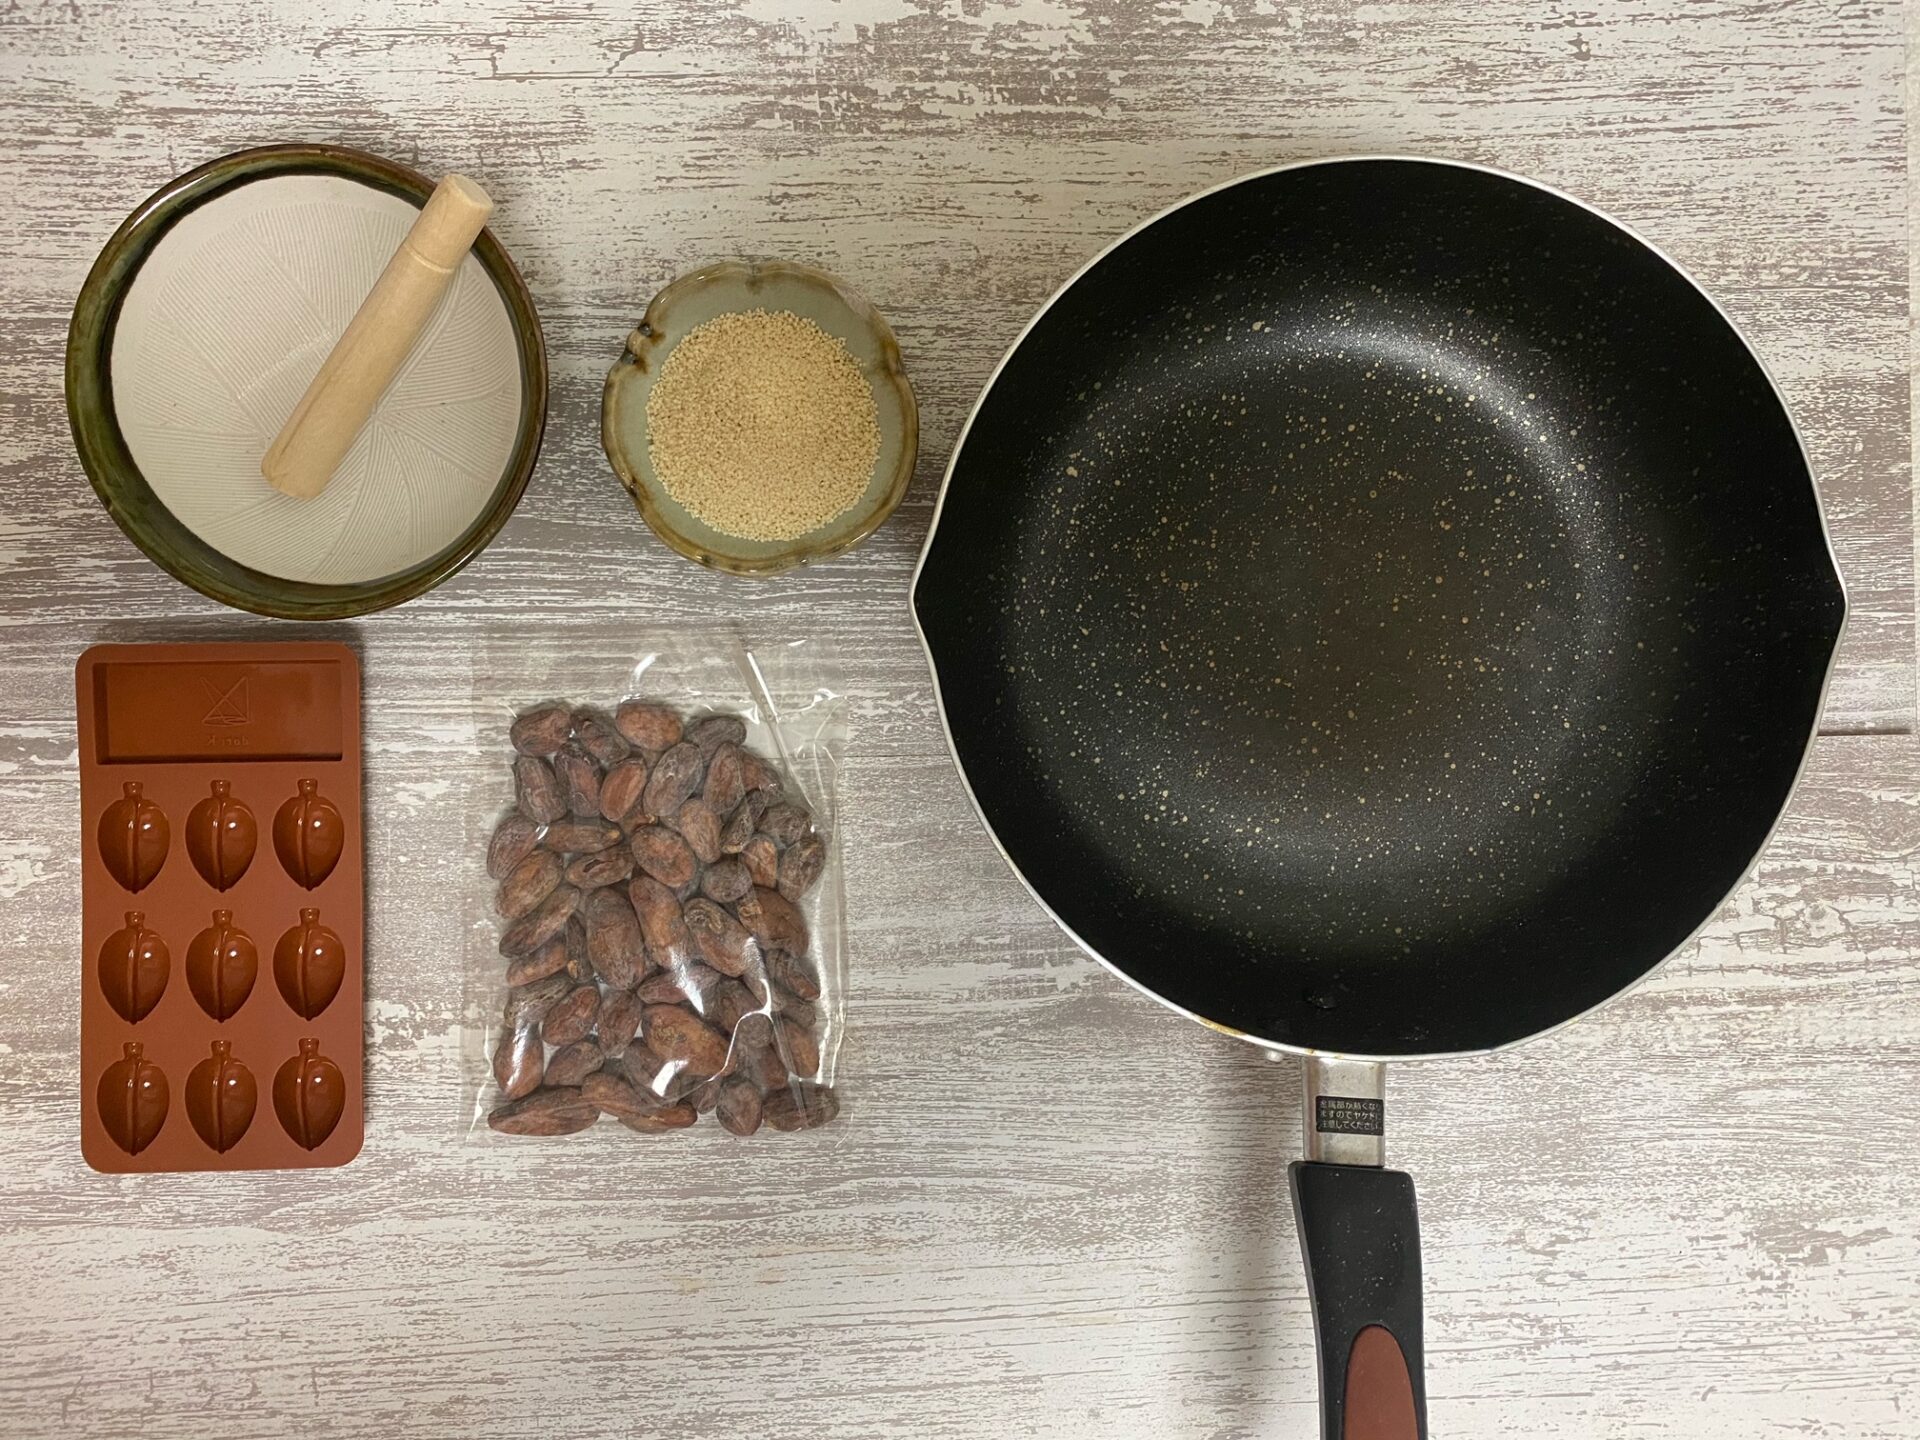 なまカカオ豆８０グラム、シリコン製のモールドがひとつ、フライパン、すりばち、すりこぎ、きび糖の写真